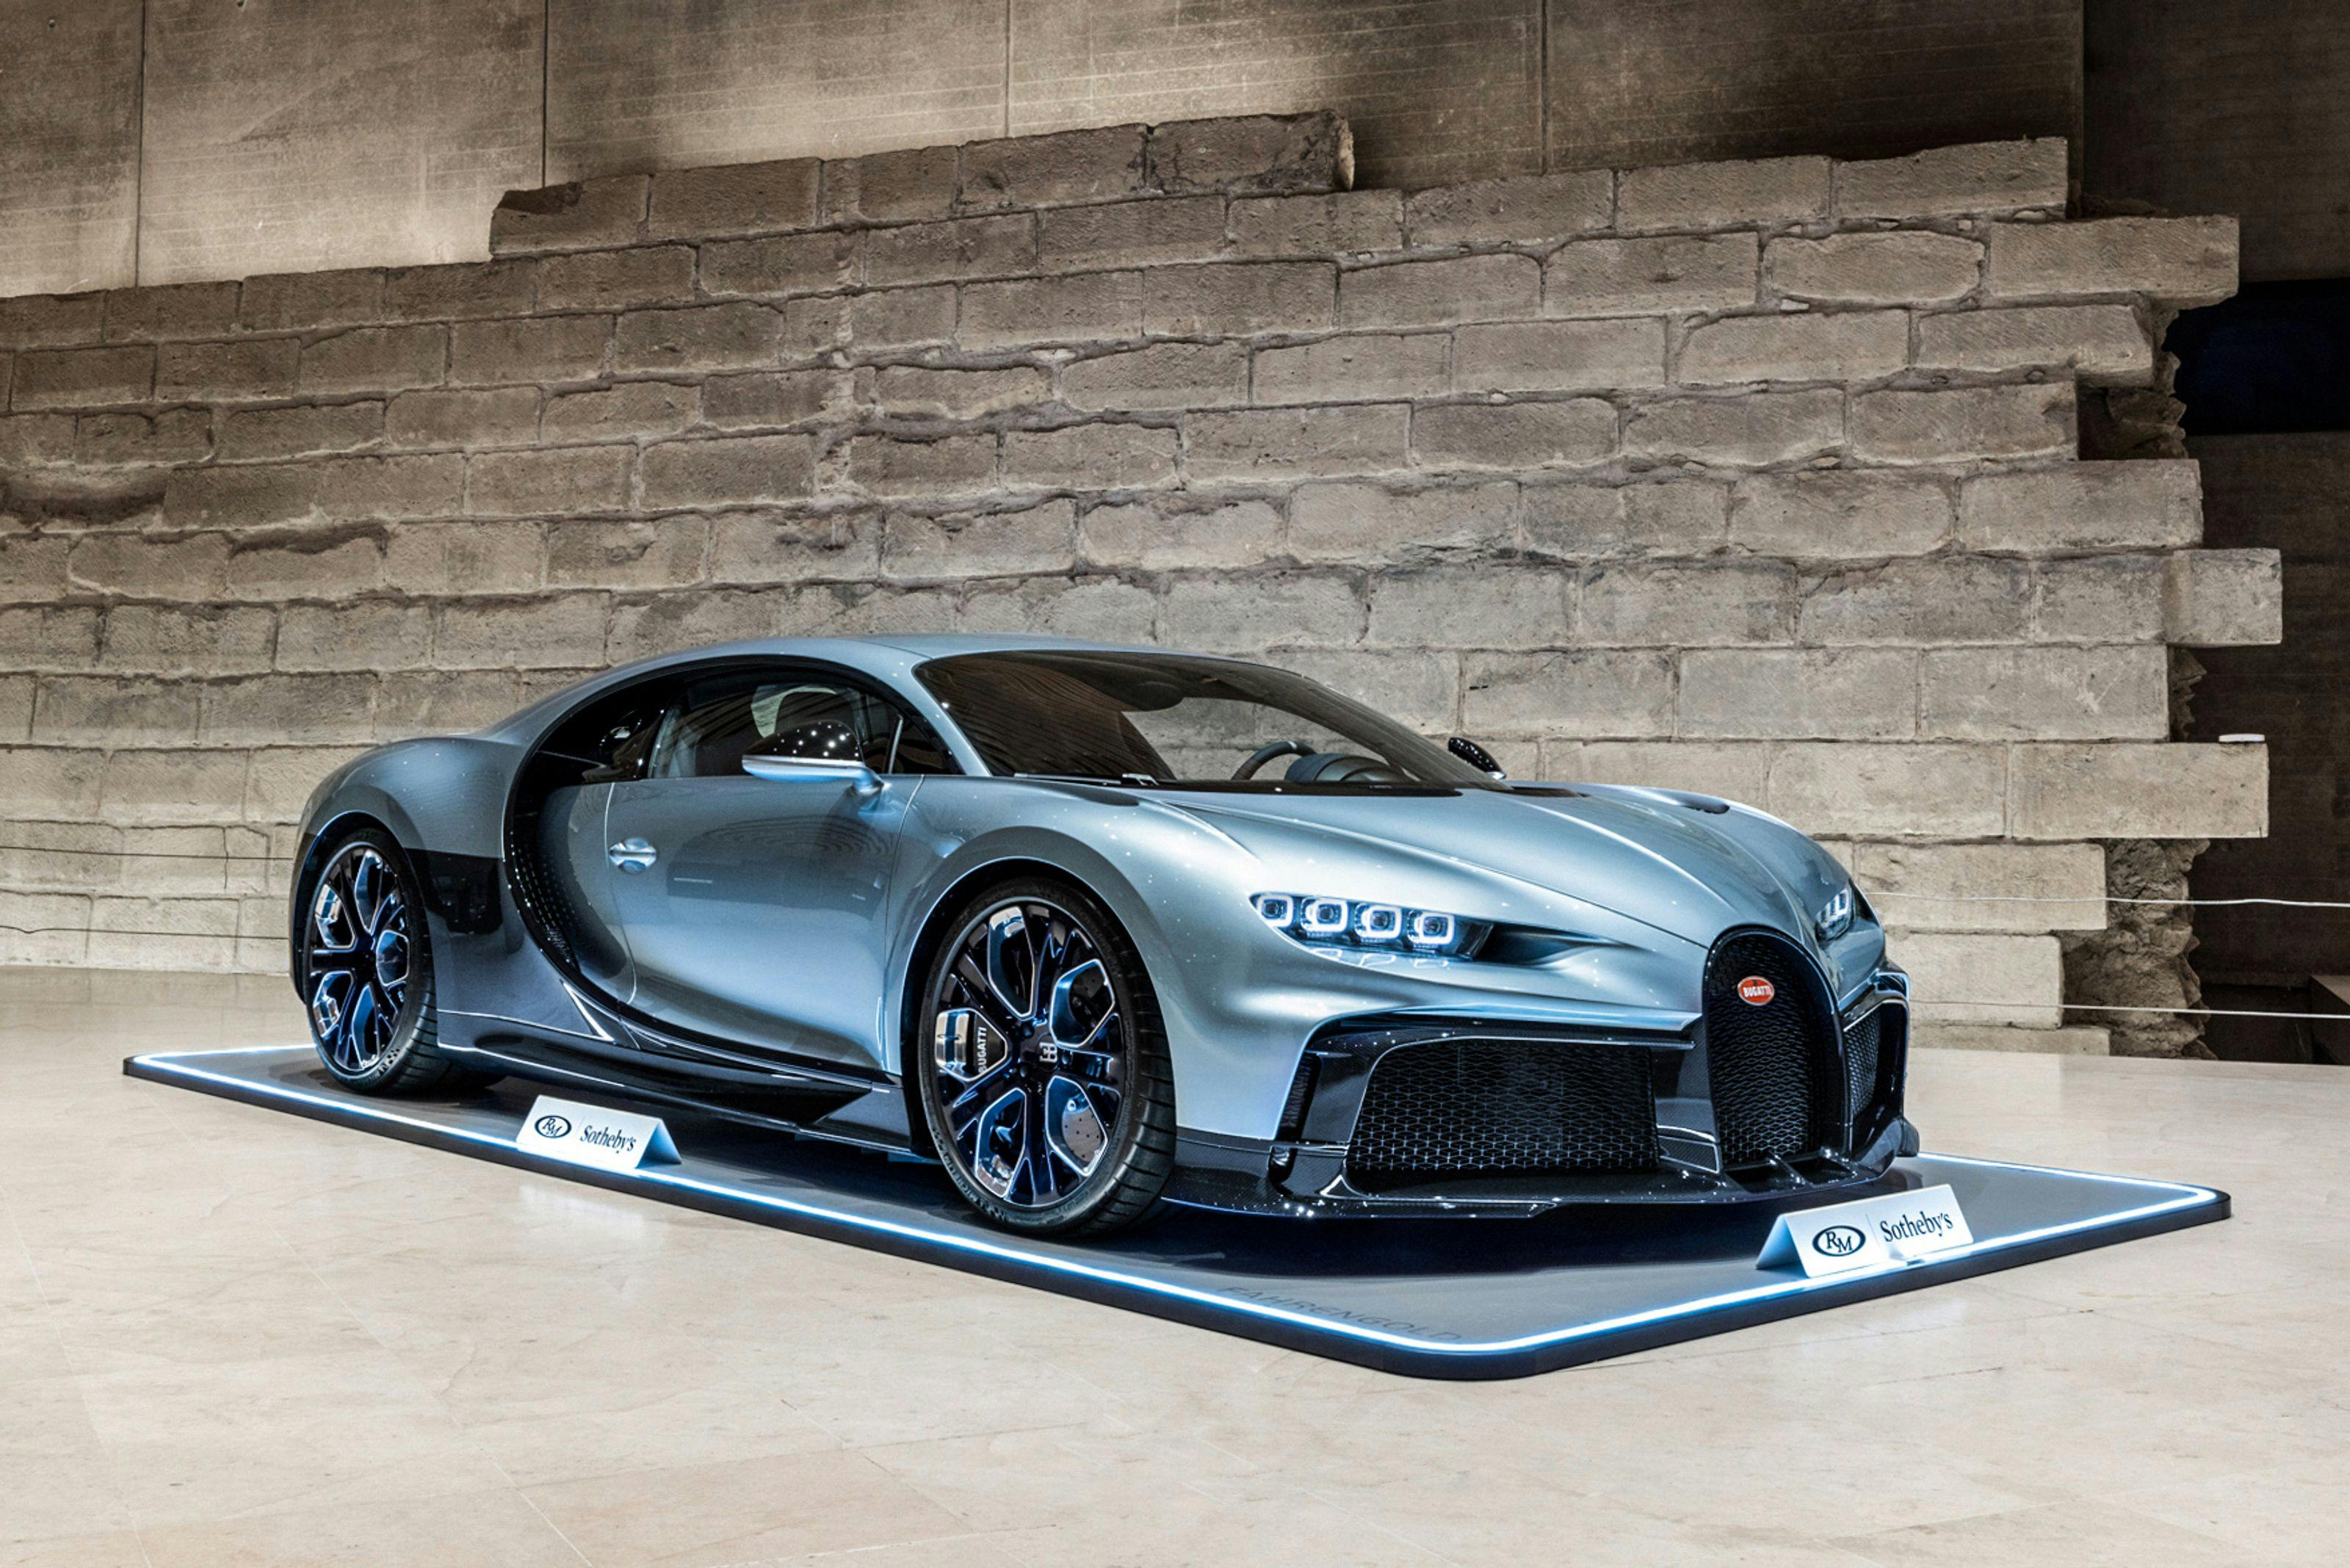 La Bugatti Chiron Profilée : voiture neuve la plus chère jamais vendue aux enchères